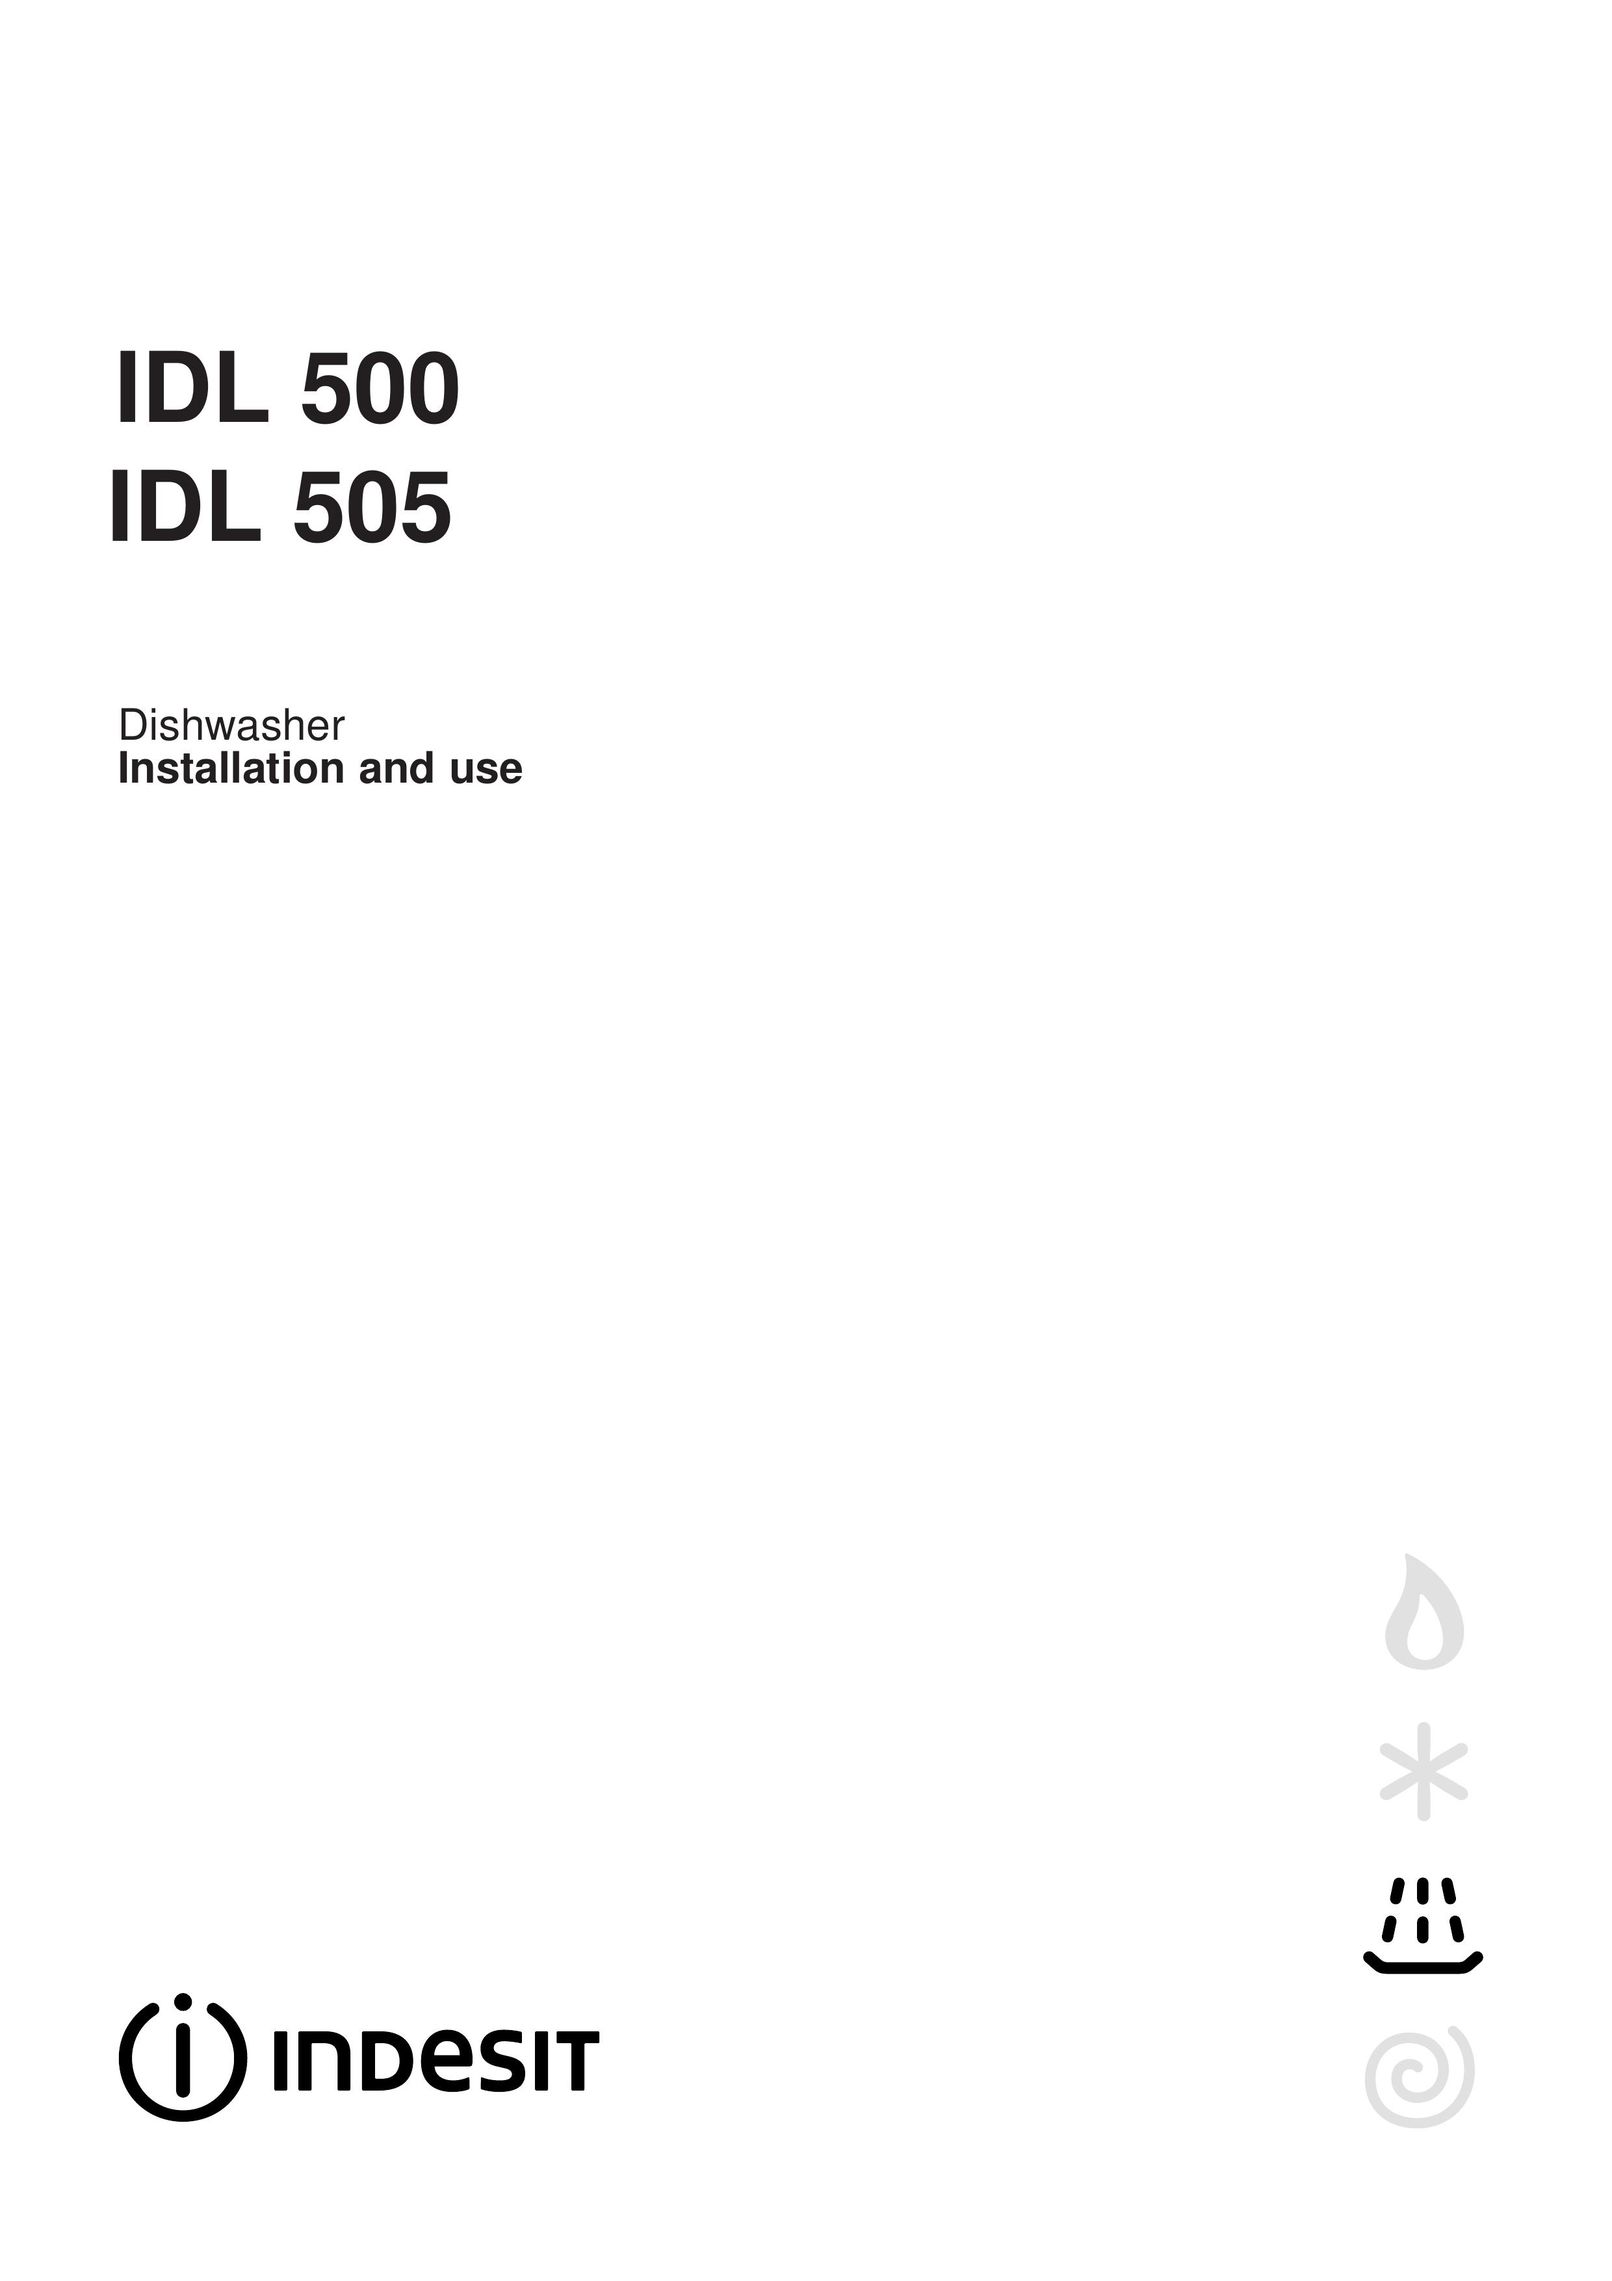 Indesit IDL 500 Dishwasher User Manual